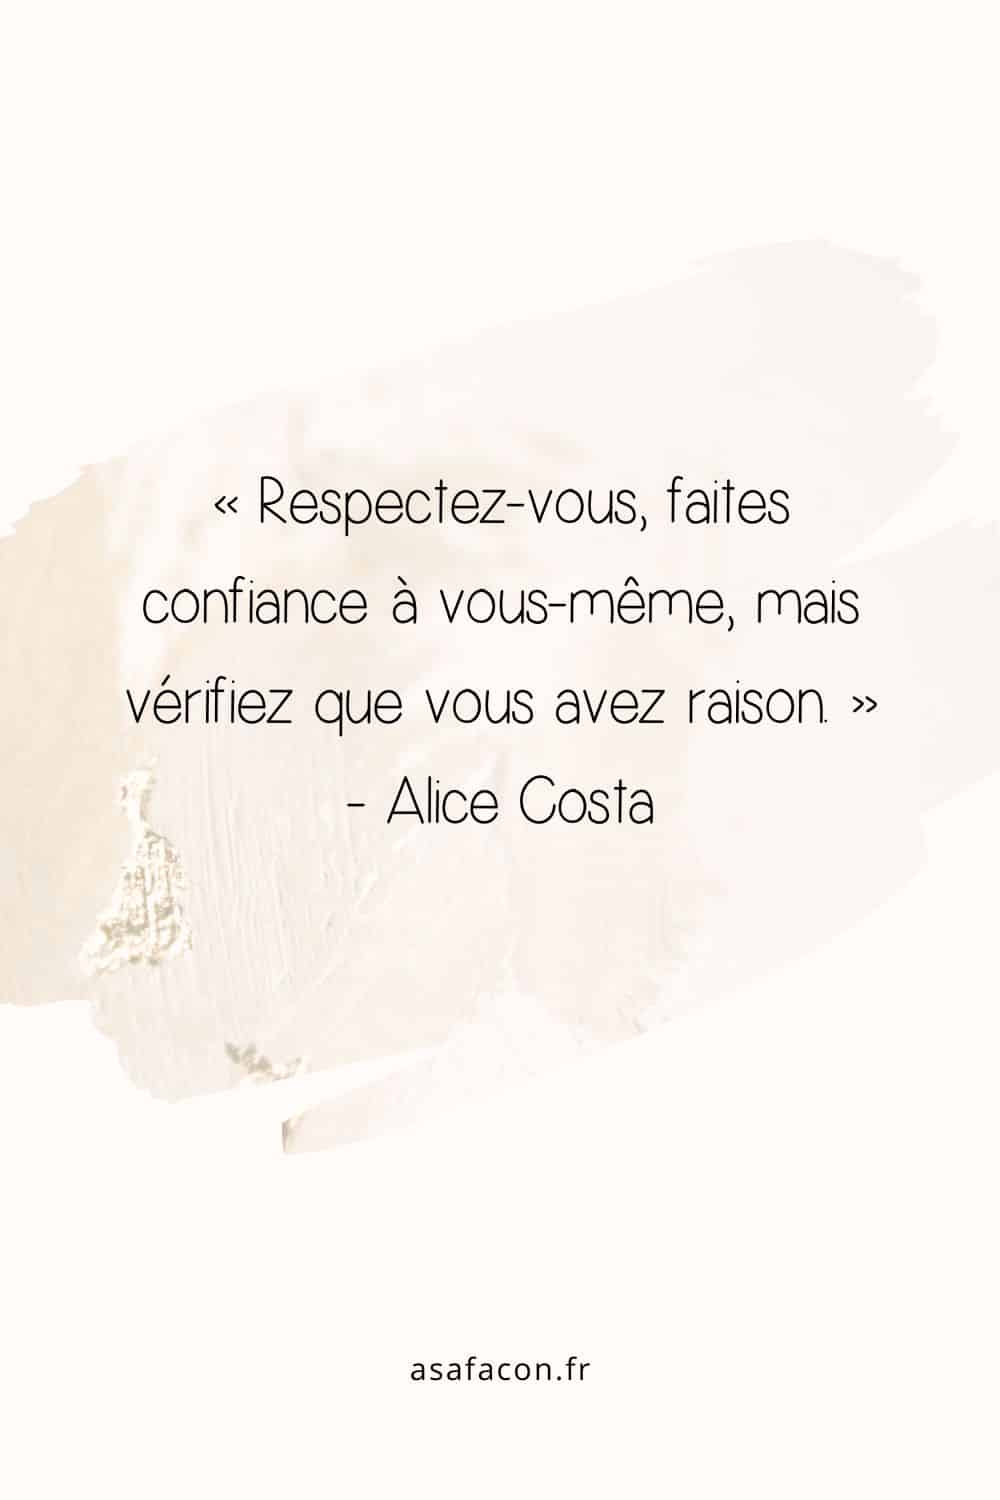 « Respectez-vous, faites confiance à vous-même, mais vérifiez que vous avez raison. » - Alice Costa